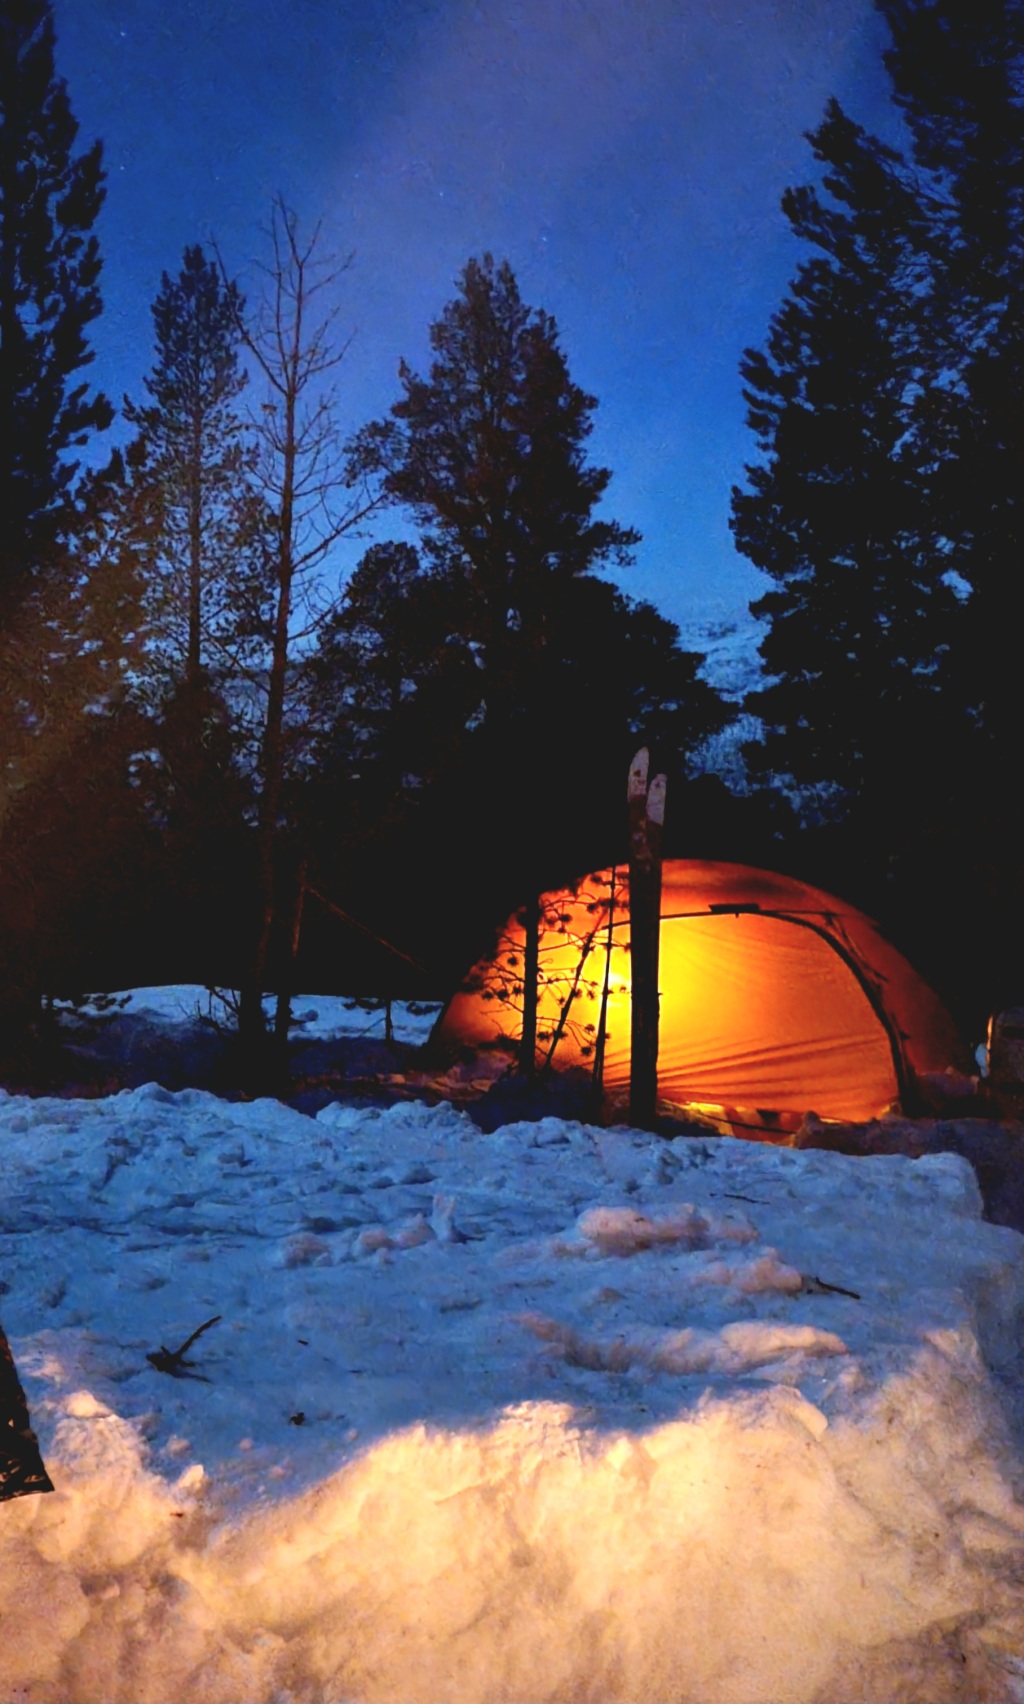 Vintereventyr i Dividalen: utforsk vintertelting i minus 18, magiske furubål og overraskelser!